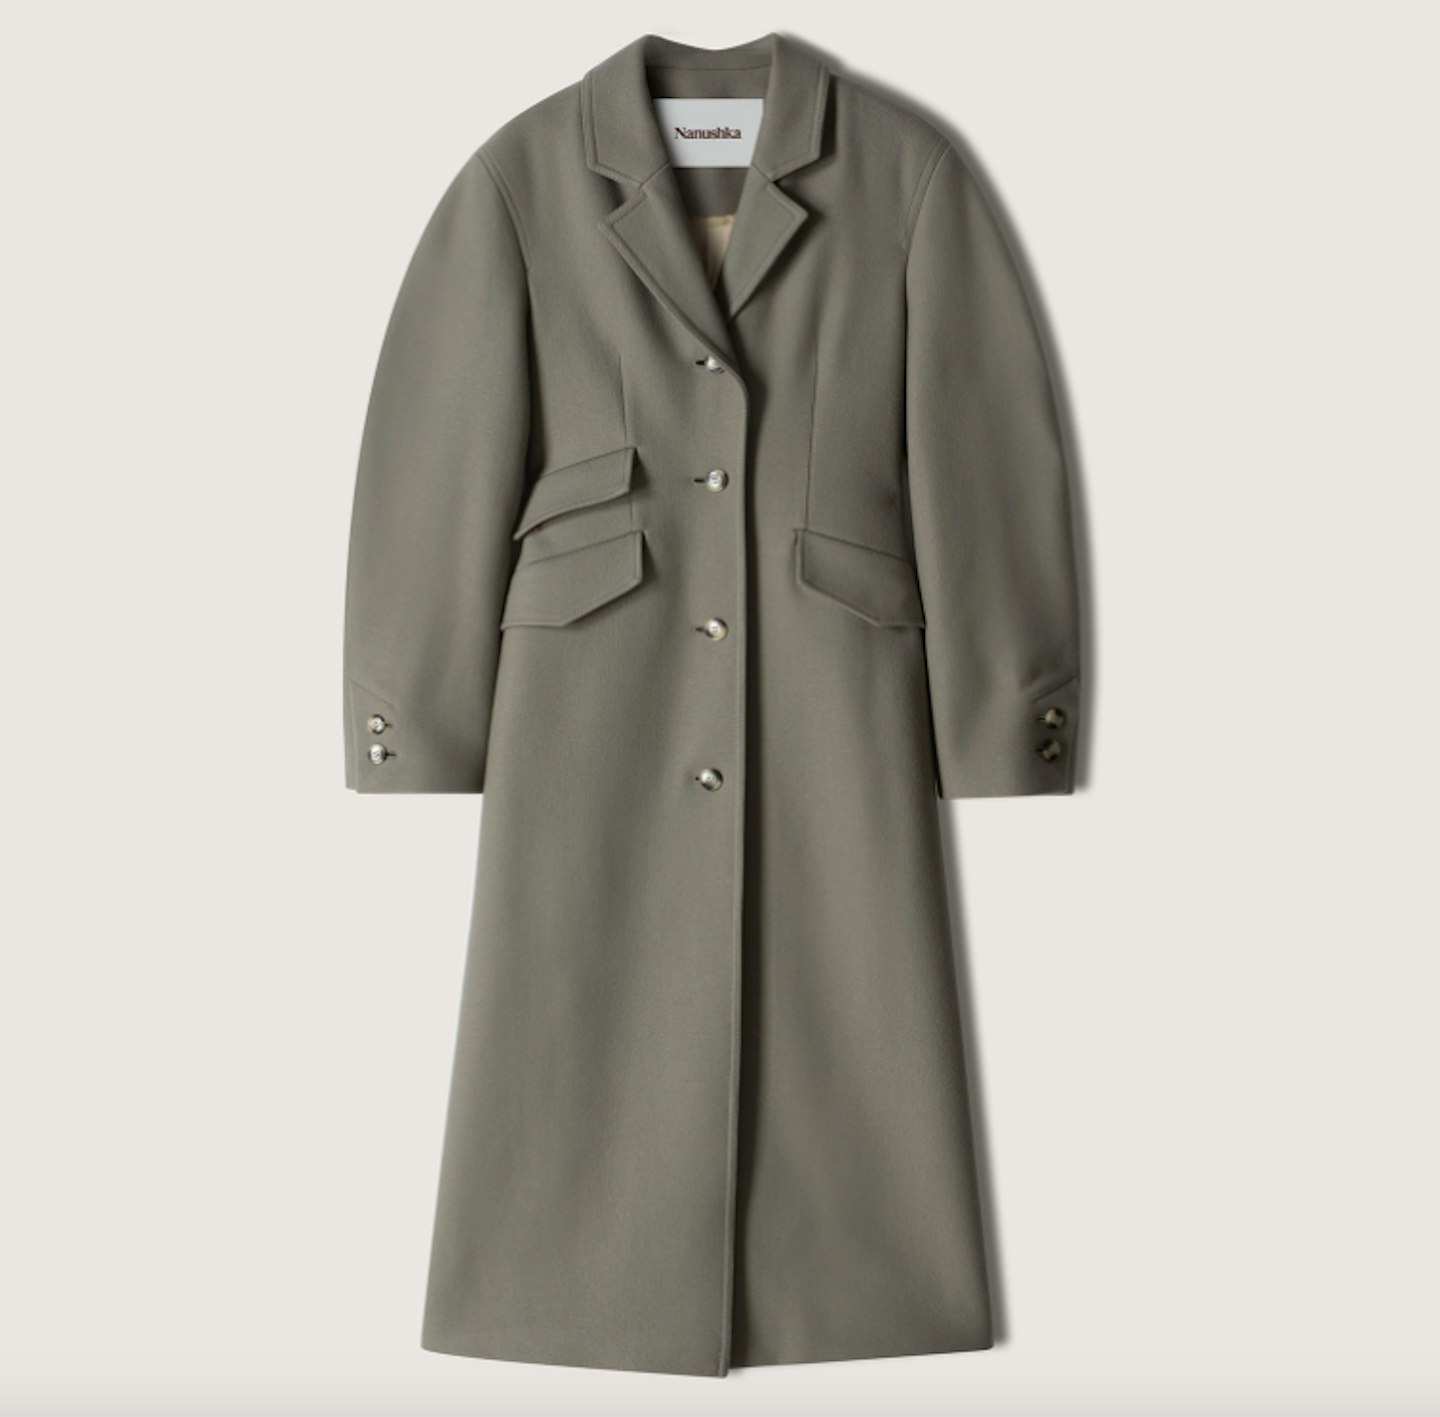 Nanushka, Elora Coat, £945